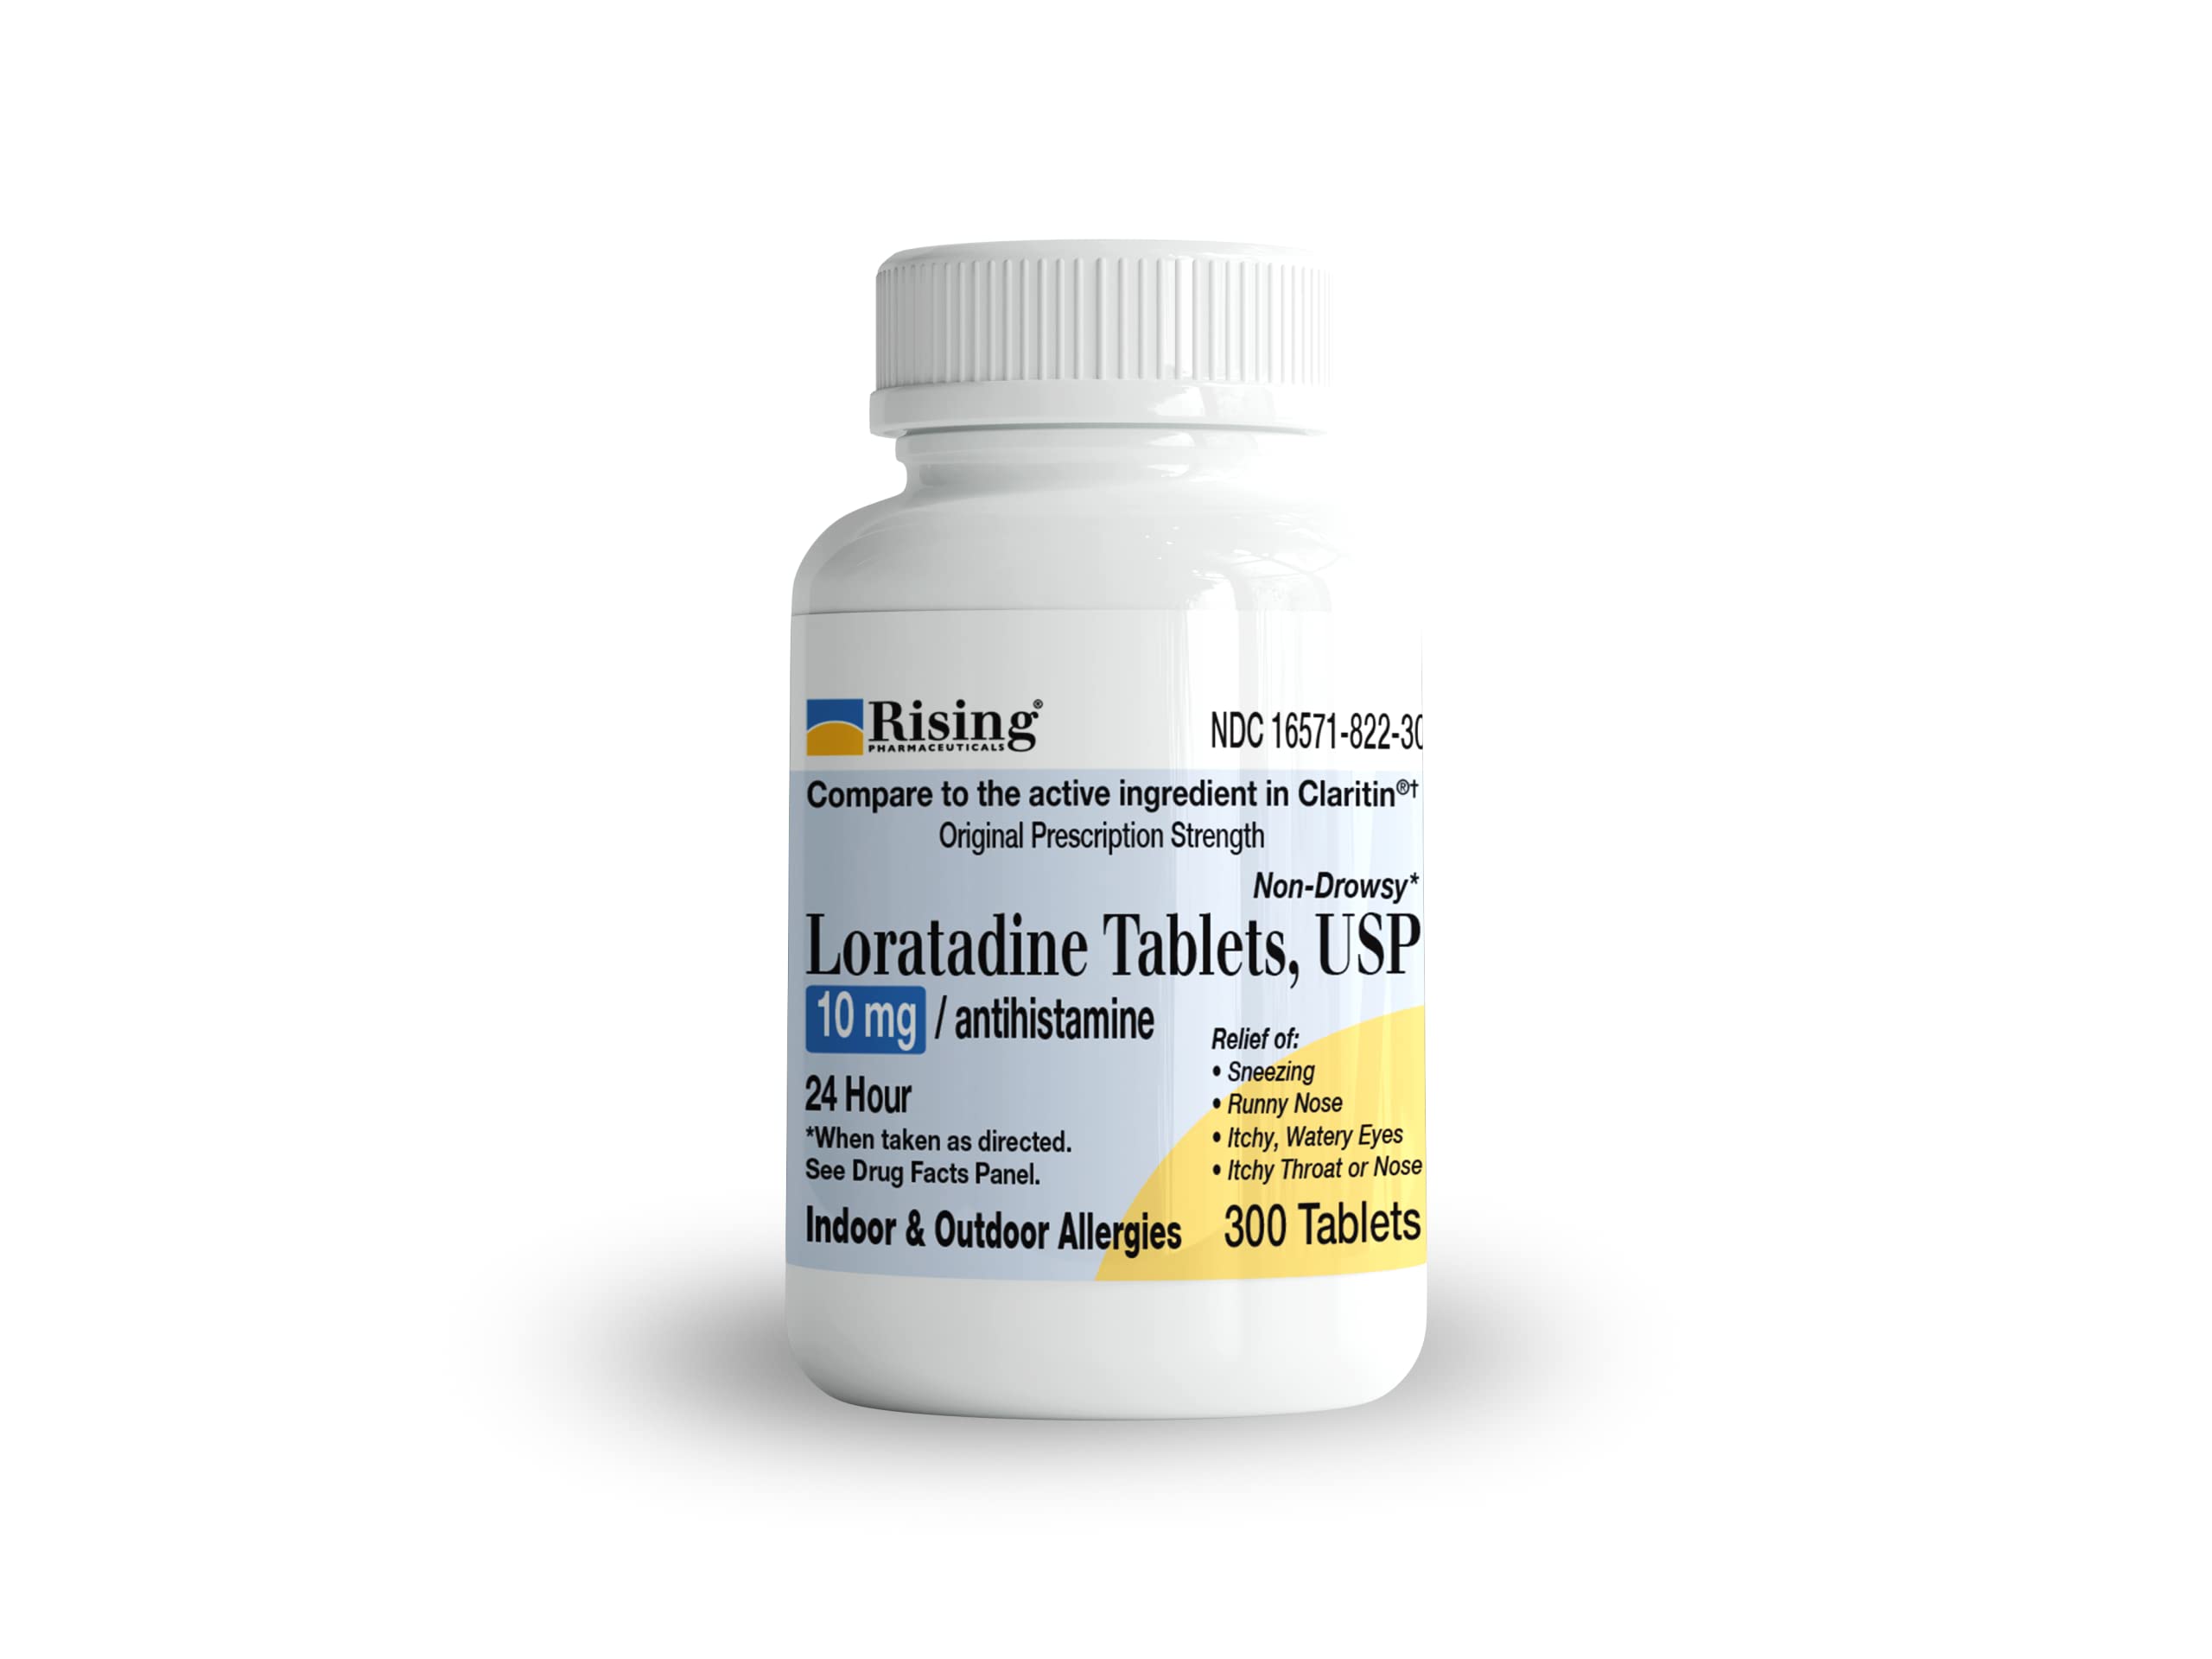 Rising Pharma Allergy Relief - Loratadine Tablets 10mg - Antihistamine, Allergy Relief Product - 300 Tablets